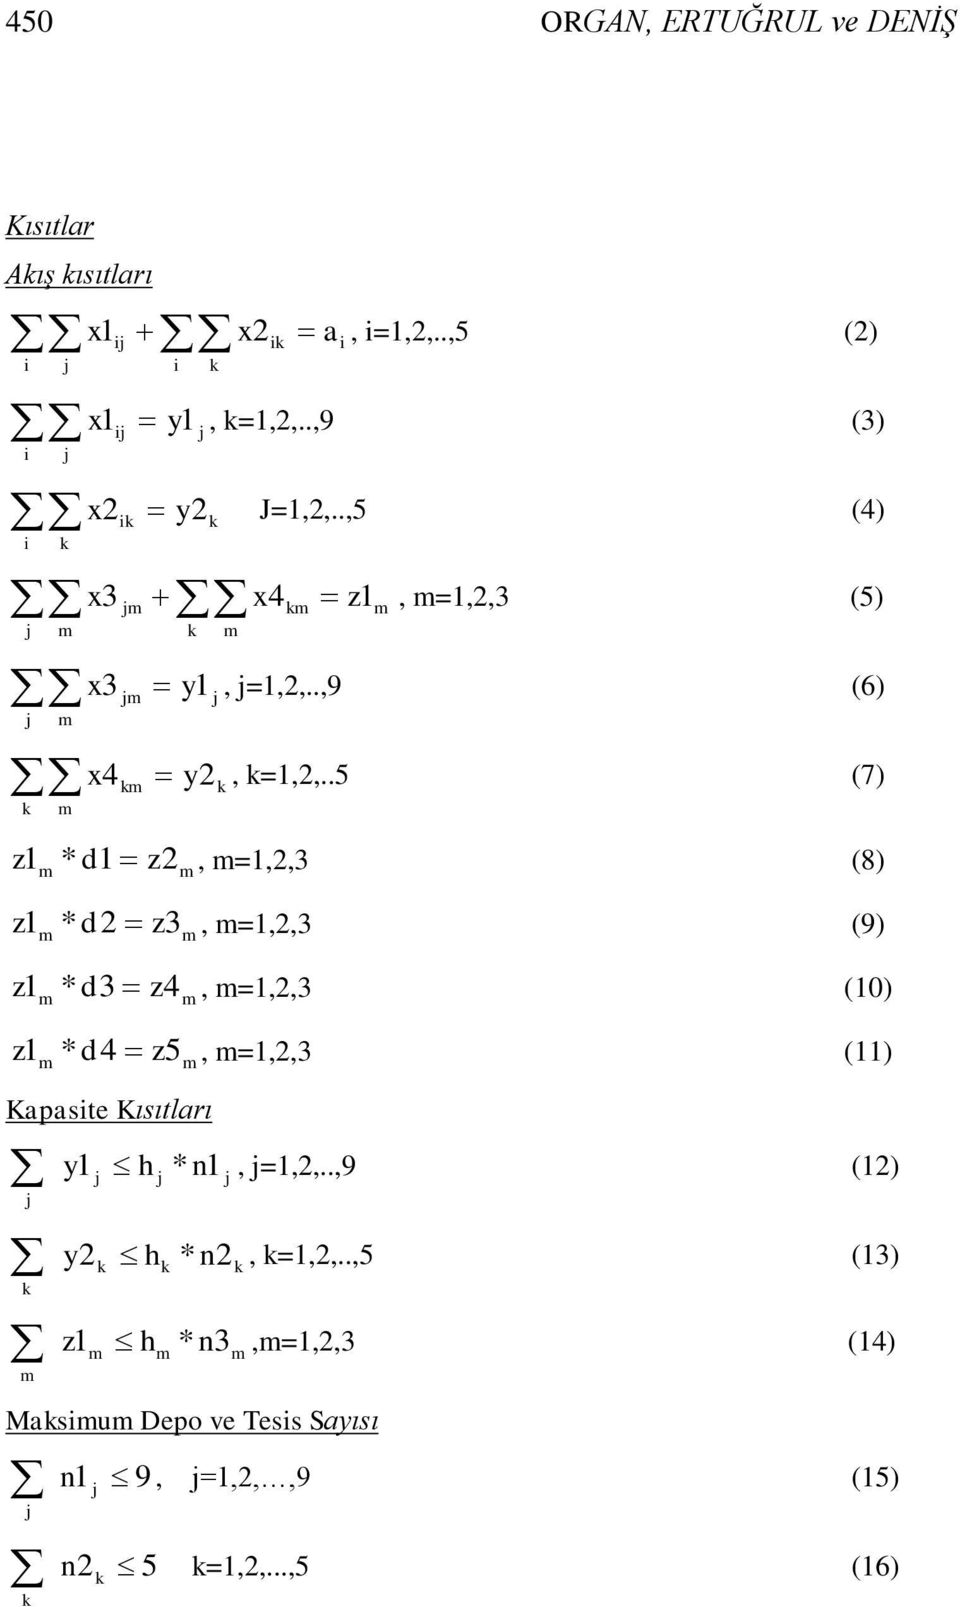 .5 (7) z1 * d1 z2, =1,2,3 (8) z1 * d2 z3, =1,2,3 (9) z1 * d3 z4, =1,2,3 (10) z1 * d4 z5, =1,2,3 (11) Kapasite